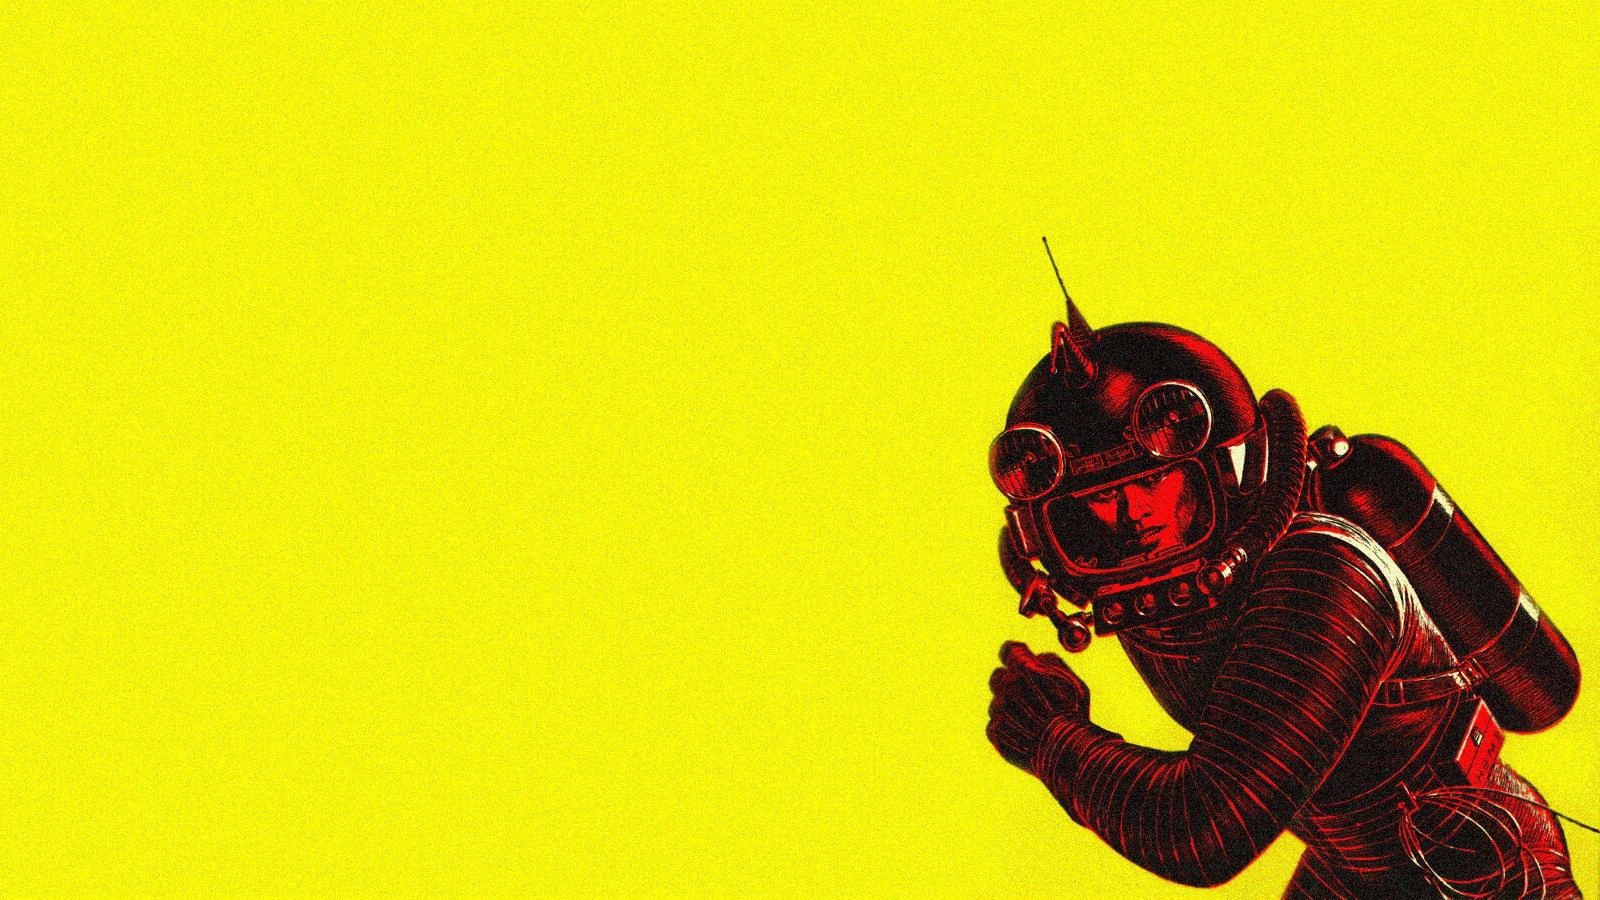 papel pintado retro del espacio,rojo,amarillo,personaje de ficción,ilustración,superhéroe